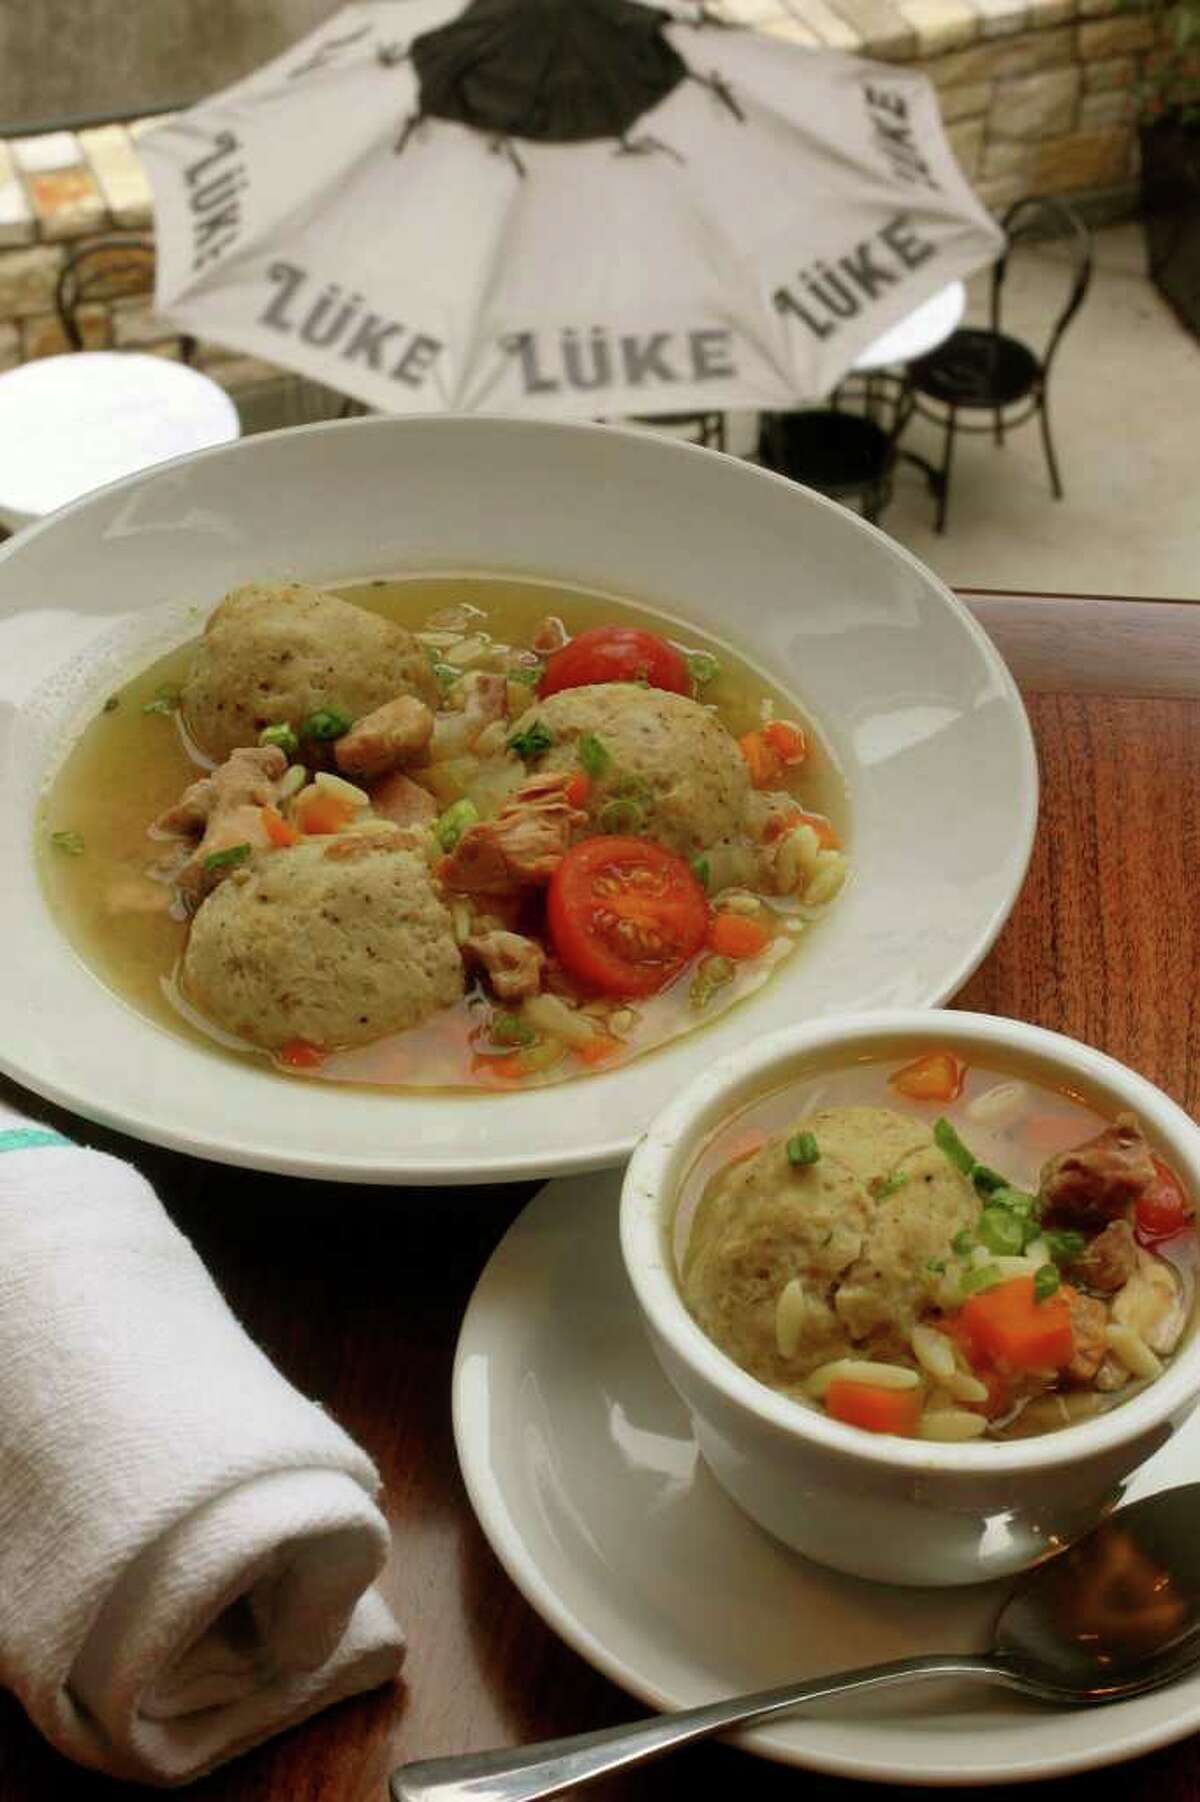 Lüke restaurant on East Houston Street offers matzo ball soup. JOHN DAVENPORT/jdavenport@express-news.net